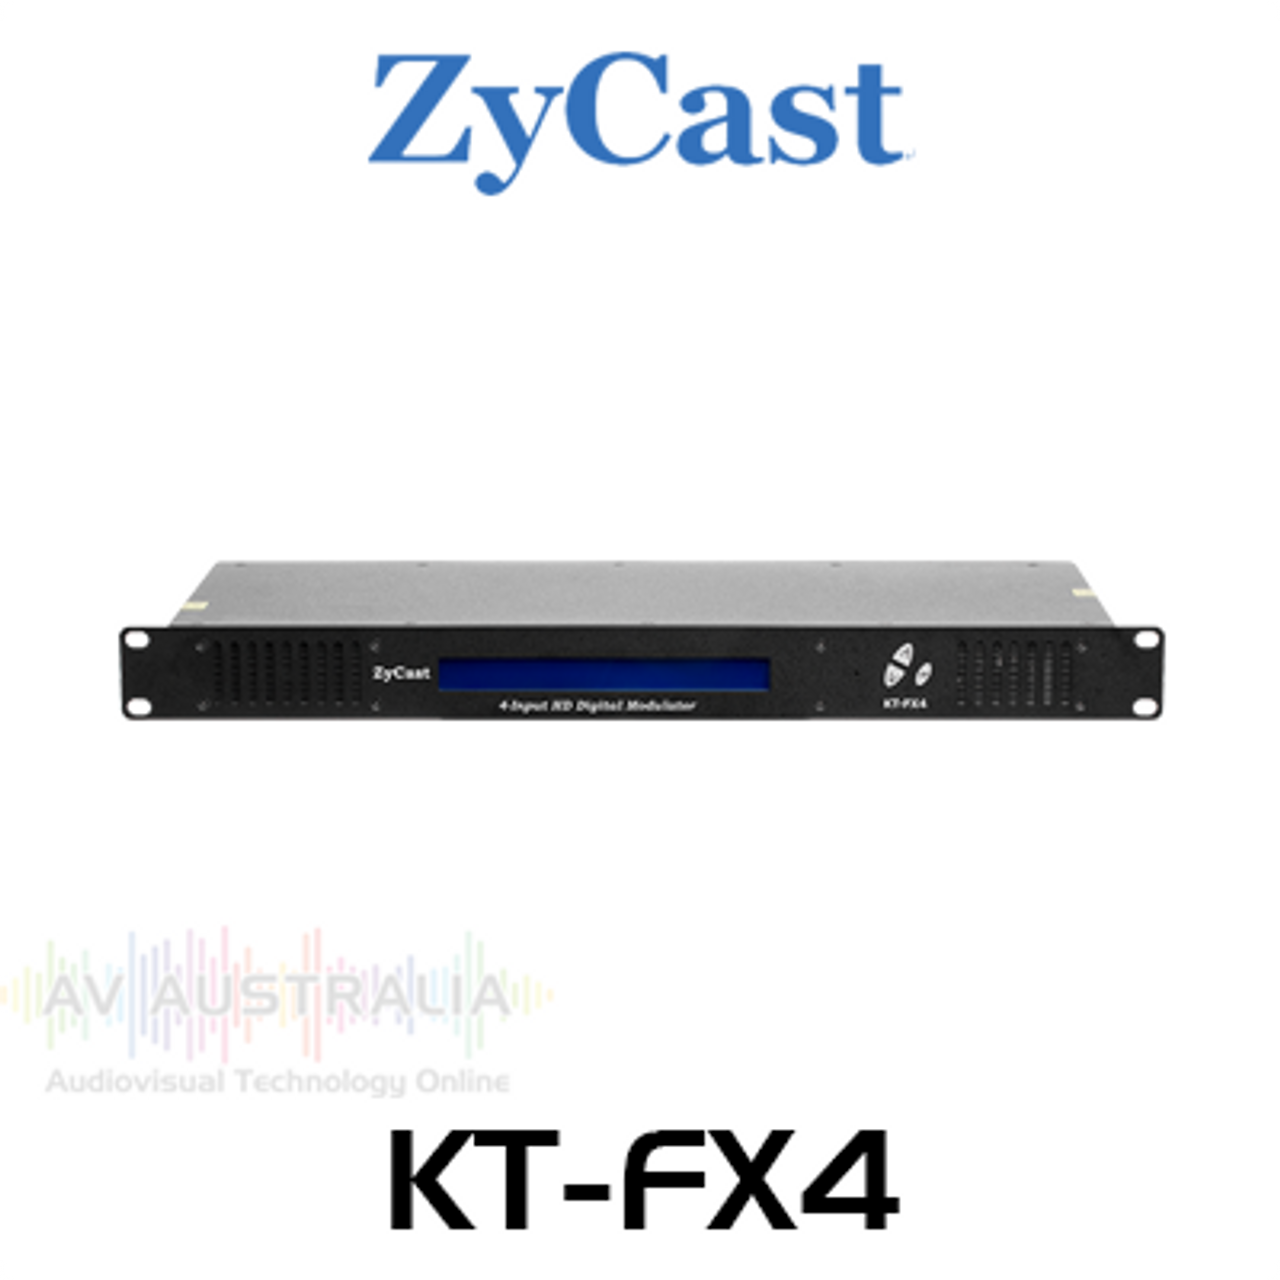 ZyCast KT-FX4 4 Inputs HD Modulator